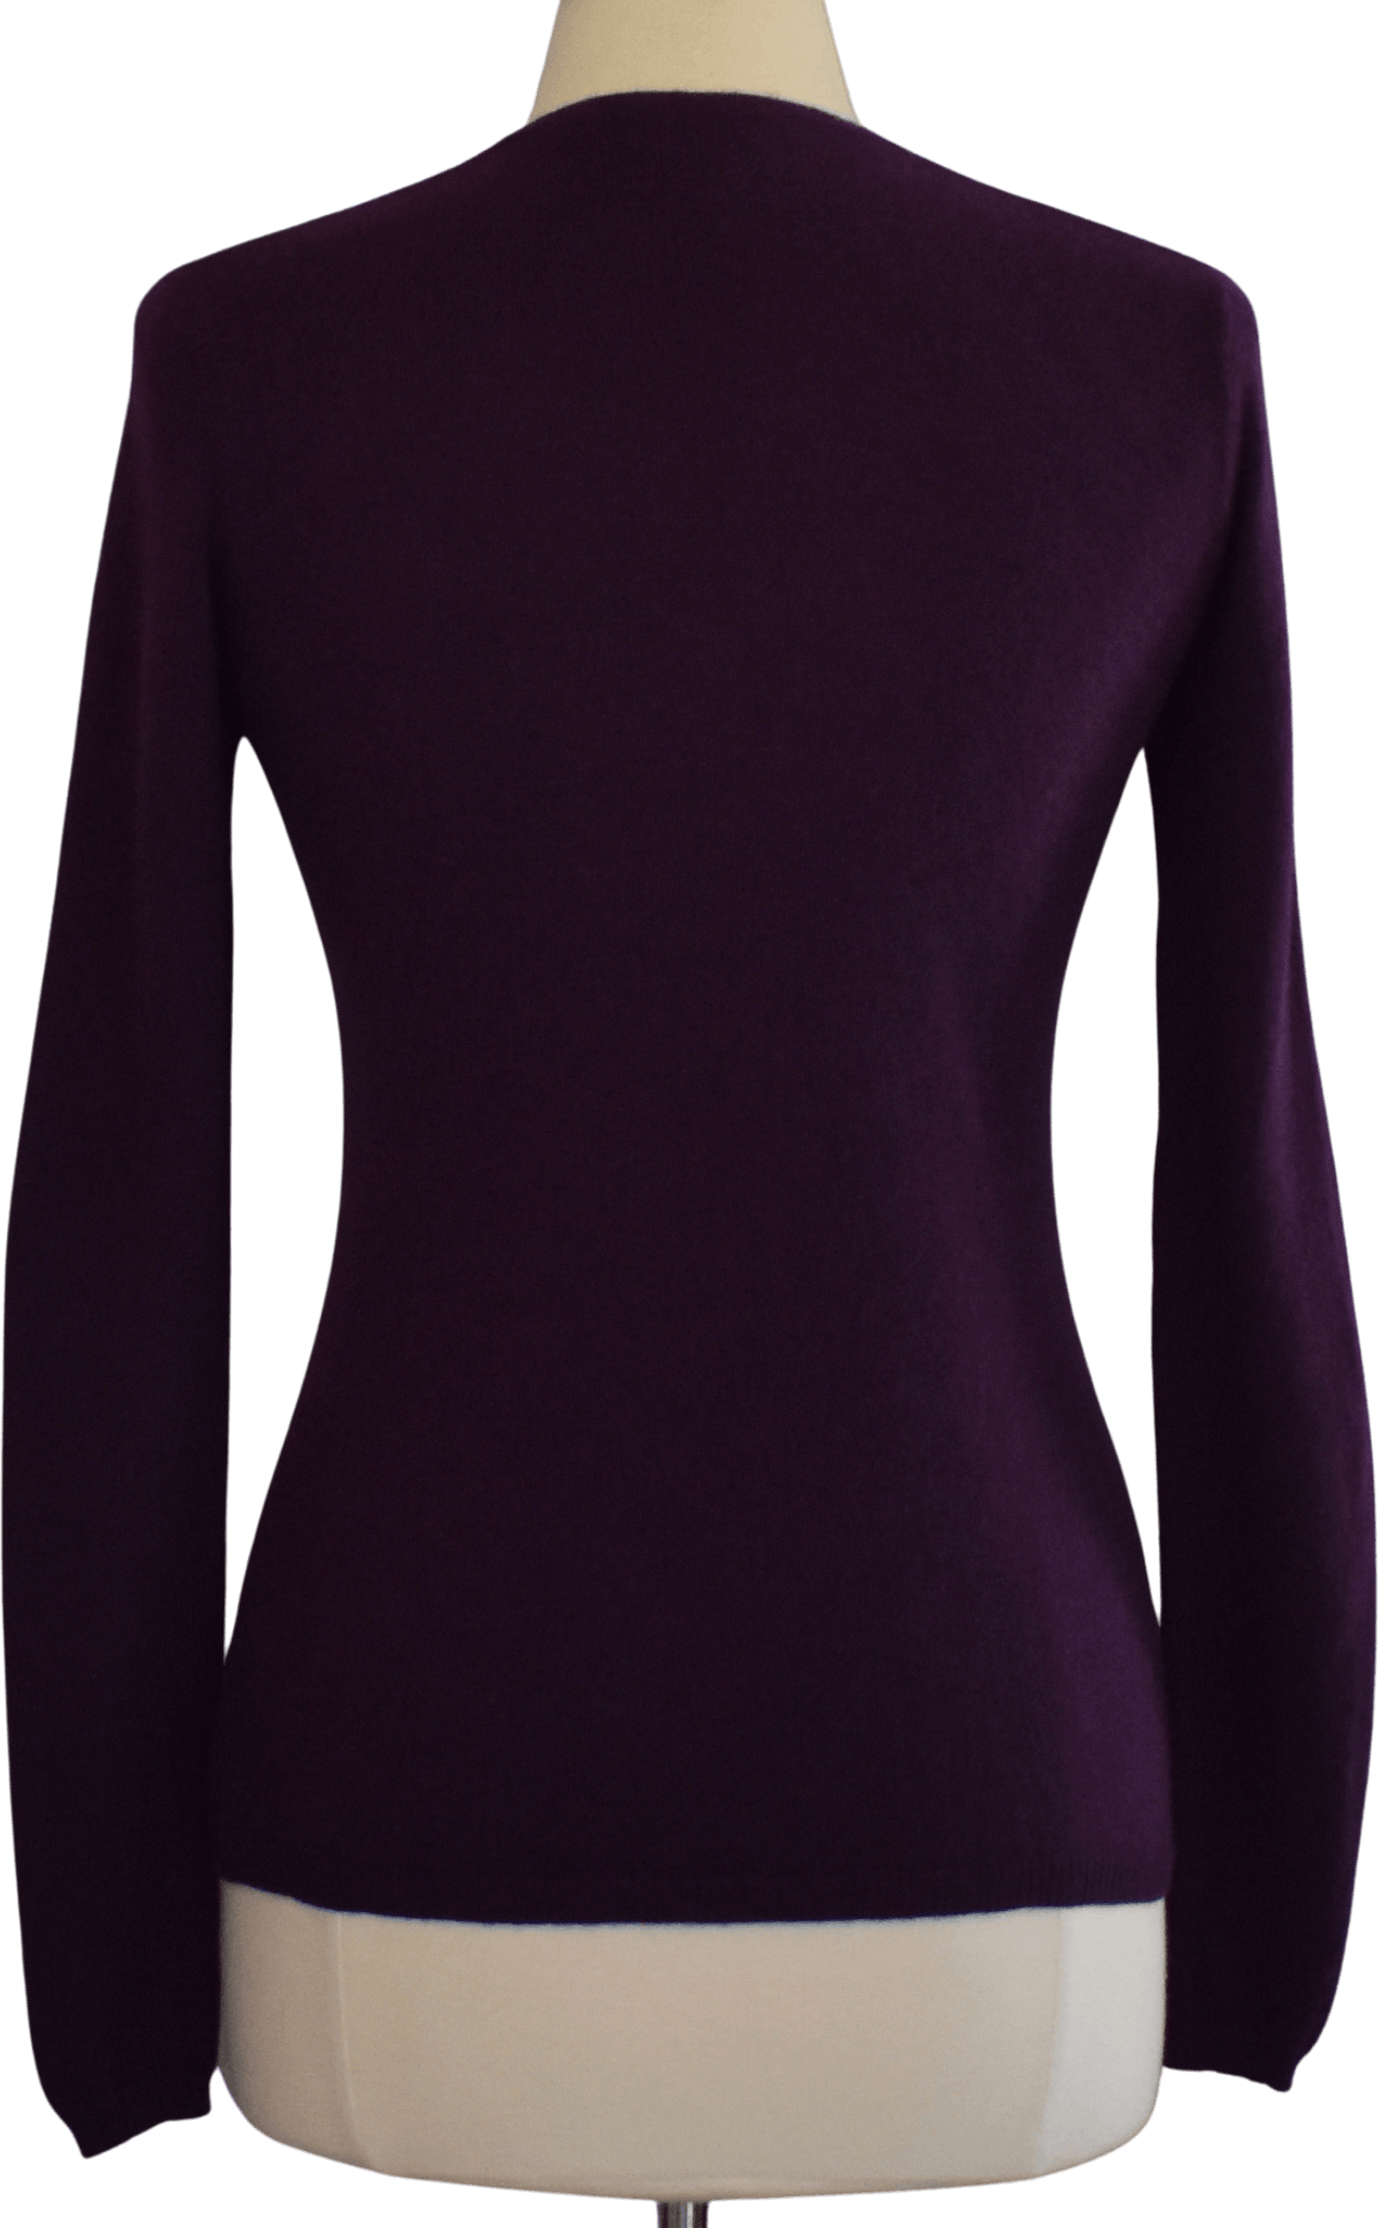 Vintage 90's Dark Purple Cashmere Sweater by Lxri | Shop THRILLING